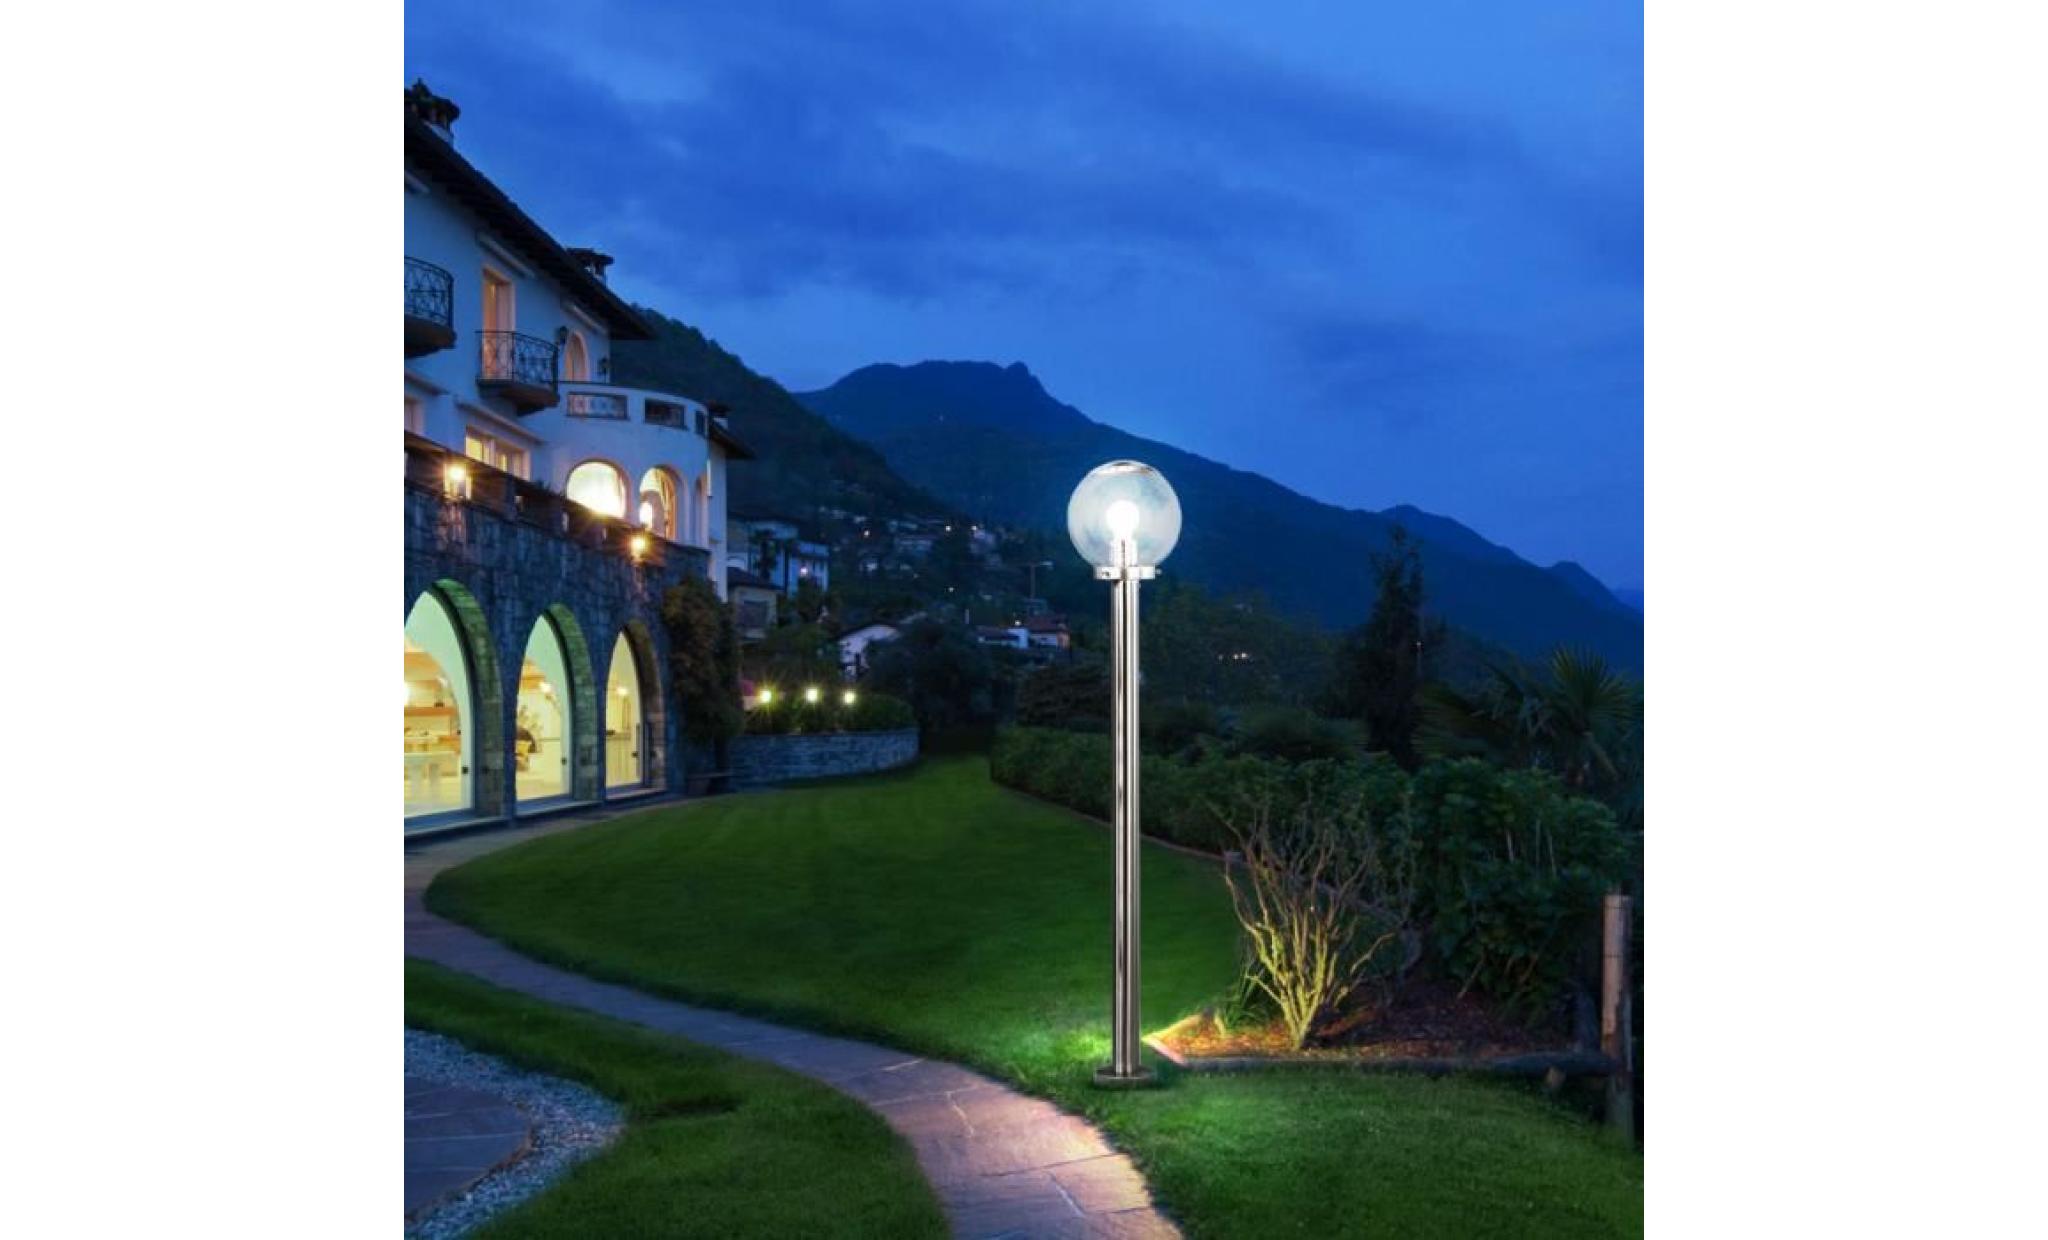 luminaire led éclairage lampe del espace extérieur boule verre acier inoxydbale jardin terrasse [variante 1]